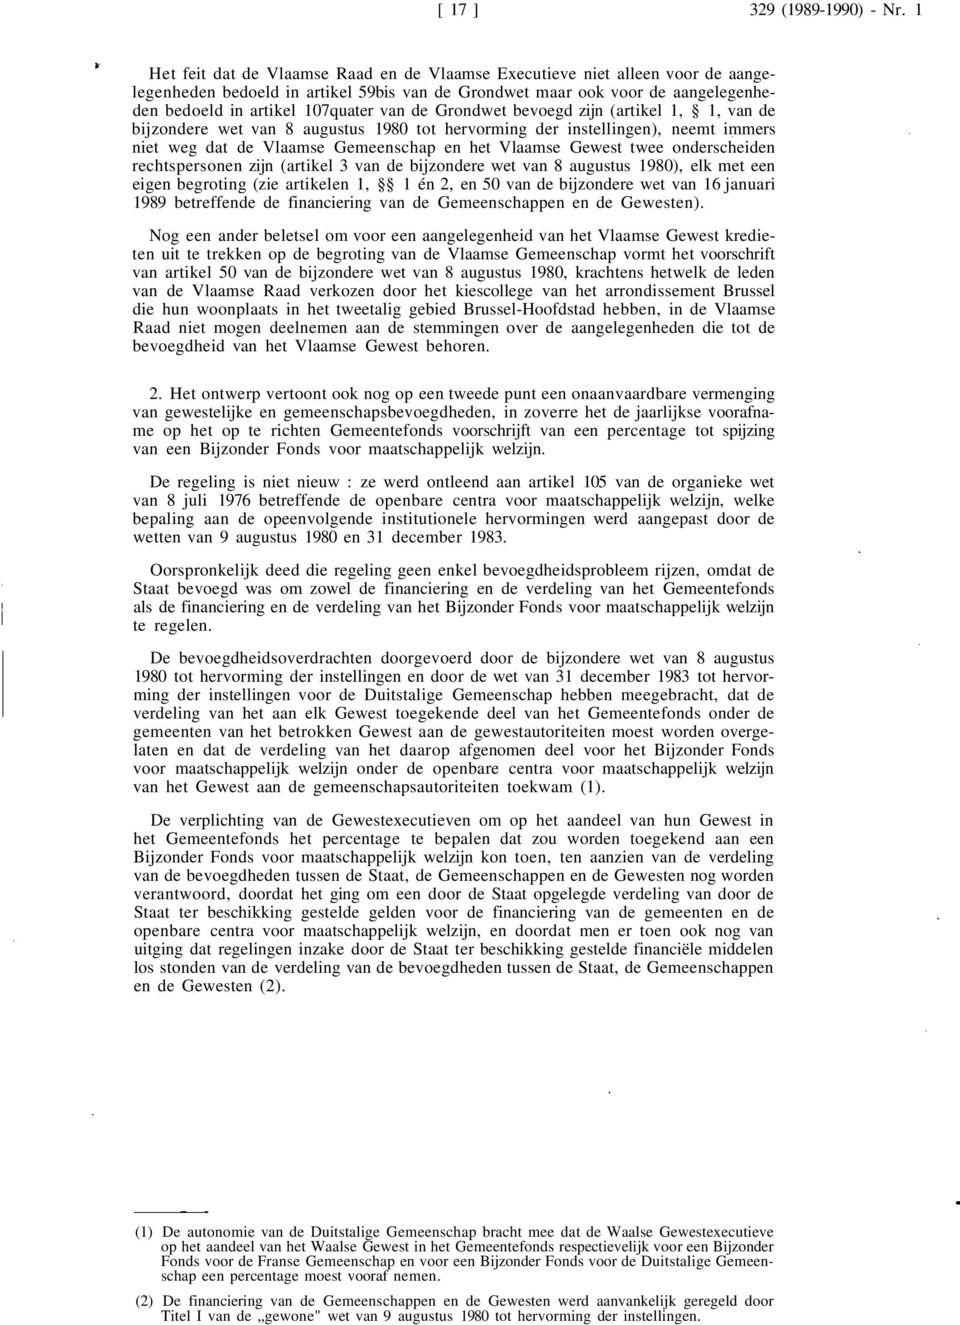 de Grondwet bevoegd zijn (artikel 1, 1, van de bijzondere wet van 8 augustus 1980 tot hervorming der instellingen), neemt immers niet weg dat de Vlaamse Gemeenschap en het Vlaamse Gewest twee